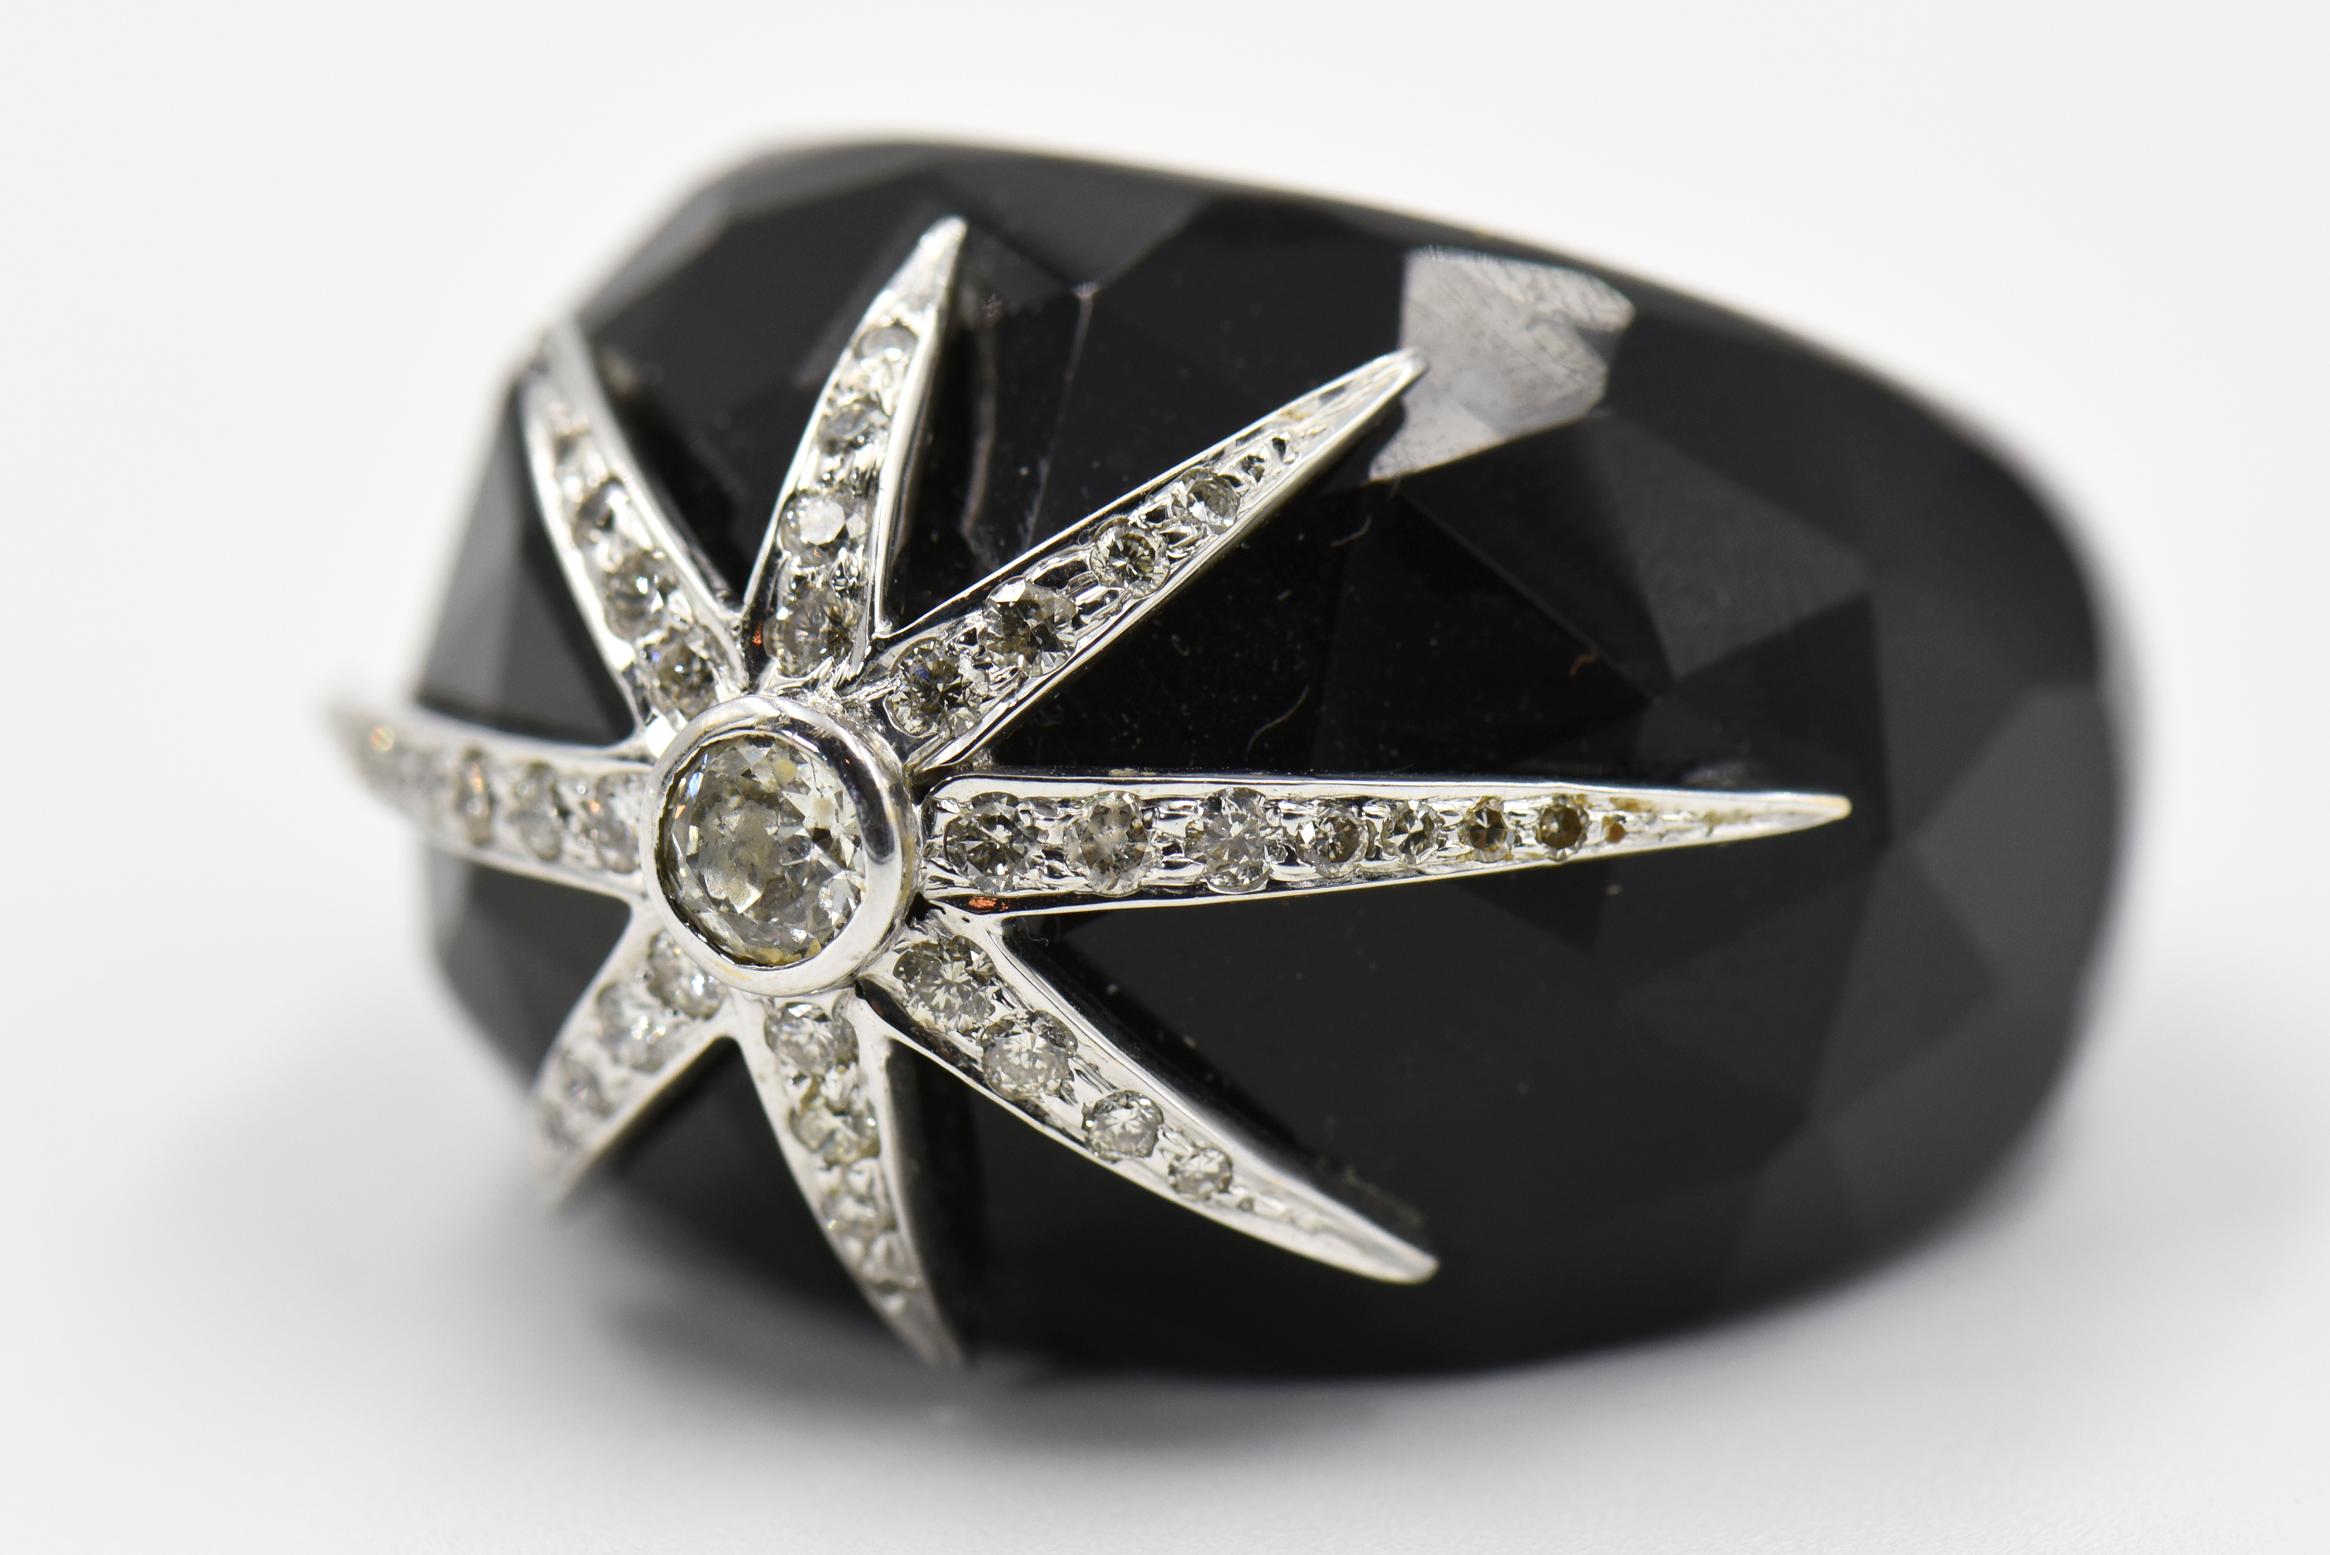 Dramatischer gewölbter Ring aus schwarzem Onyx mit Facettenschliff, verziert mit einem Stern aus 18 Karat Weißgold und Diamanten.

Der Ring ist 1,25